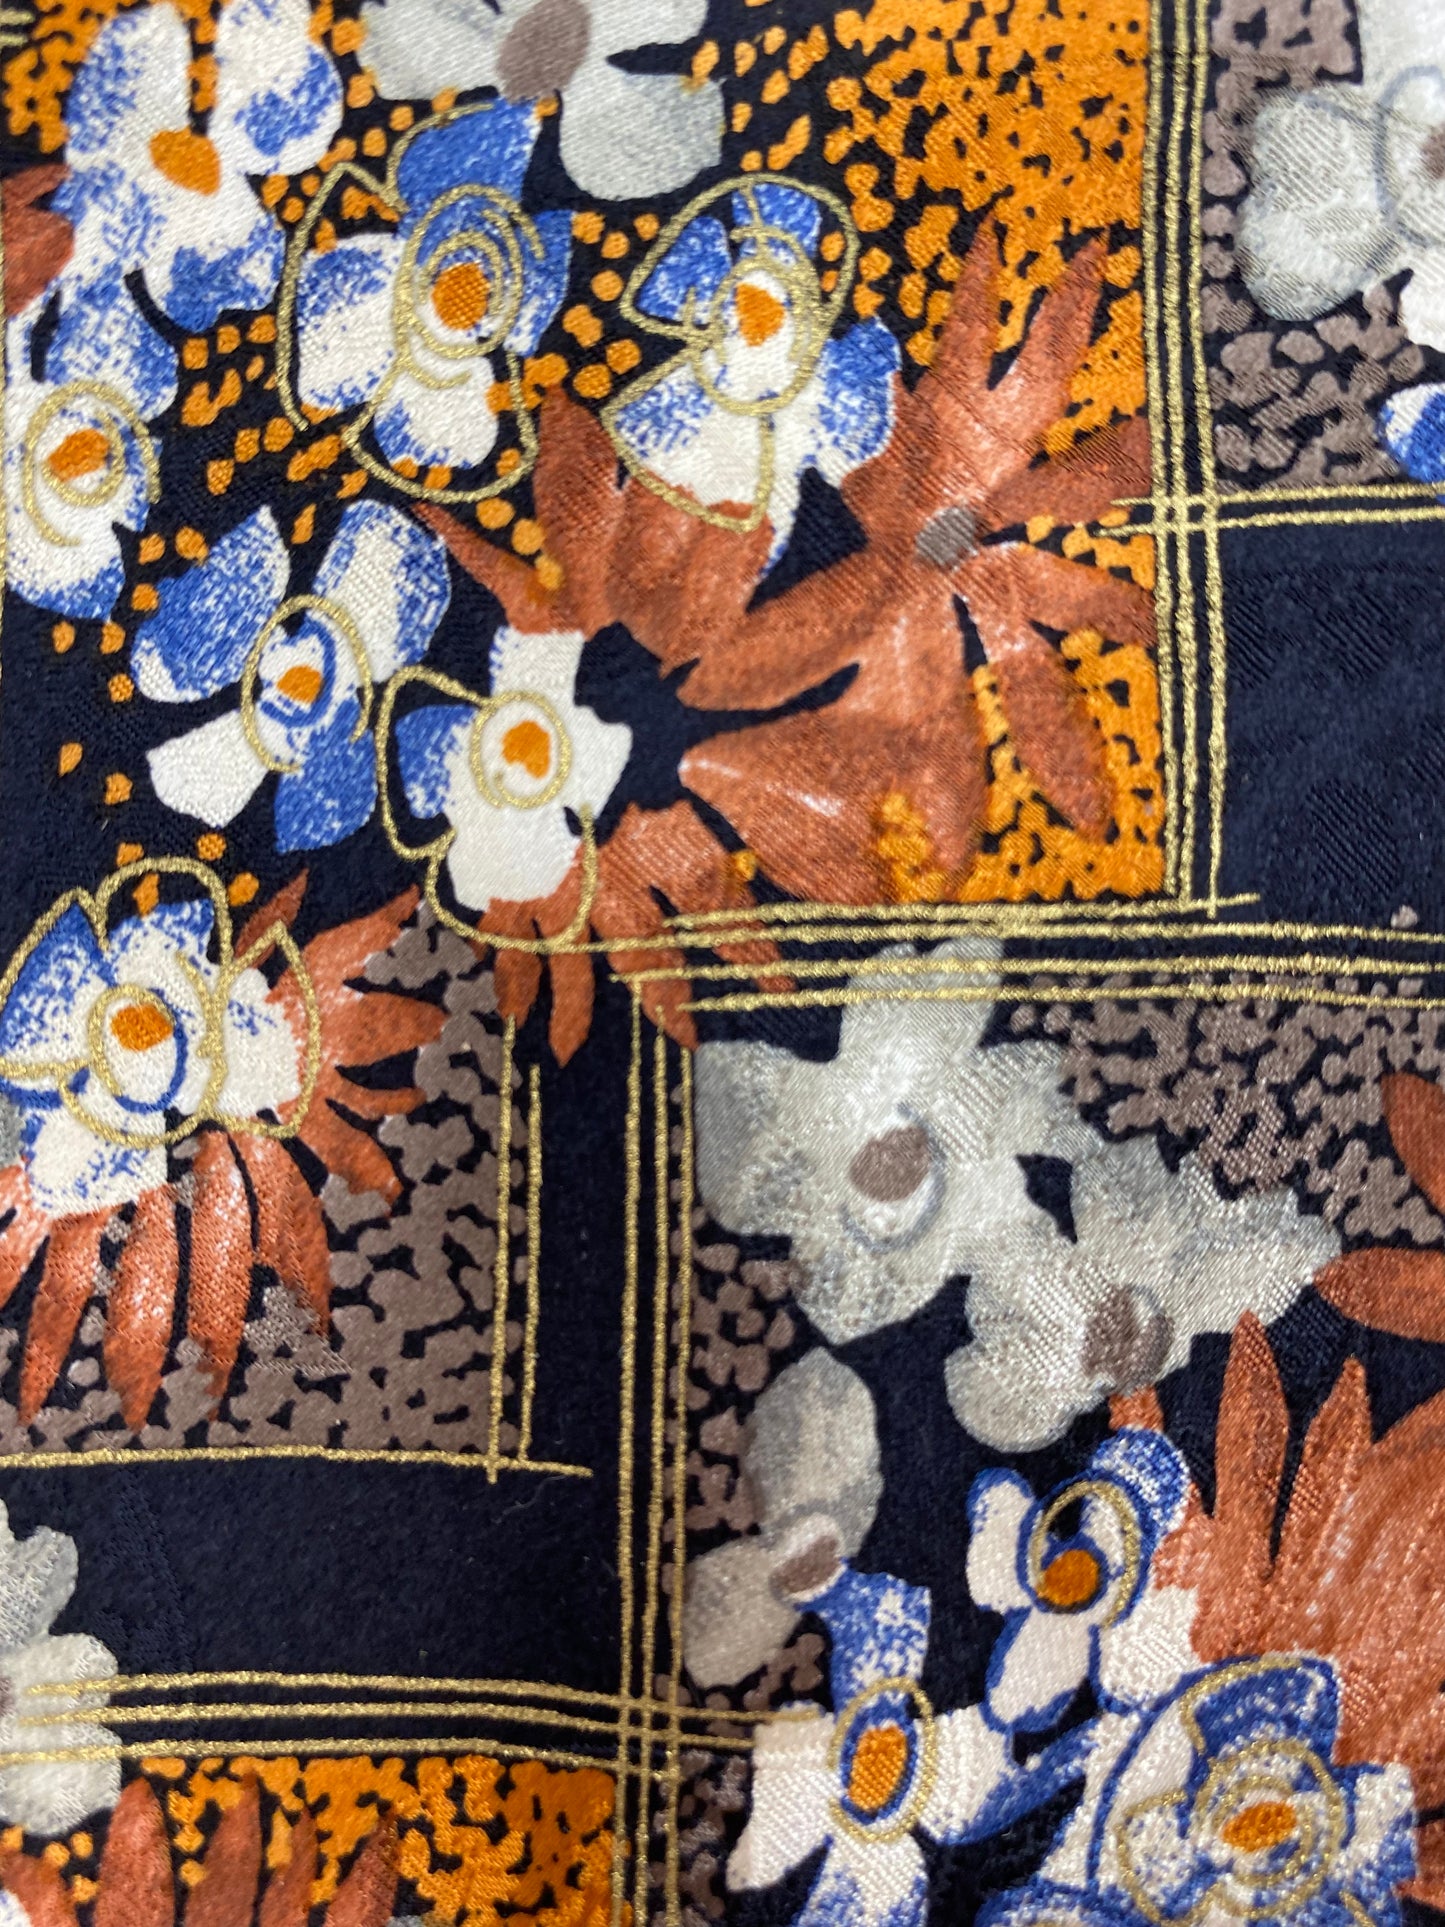 Close-up detail of: 90s Deadstock Silk Necktie, Men's Vintage Orange/ Brown Floral Pattern Tie, NOS